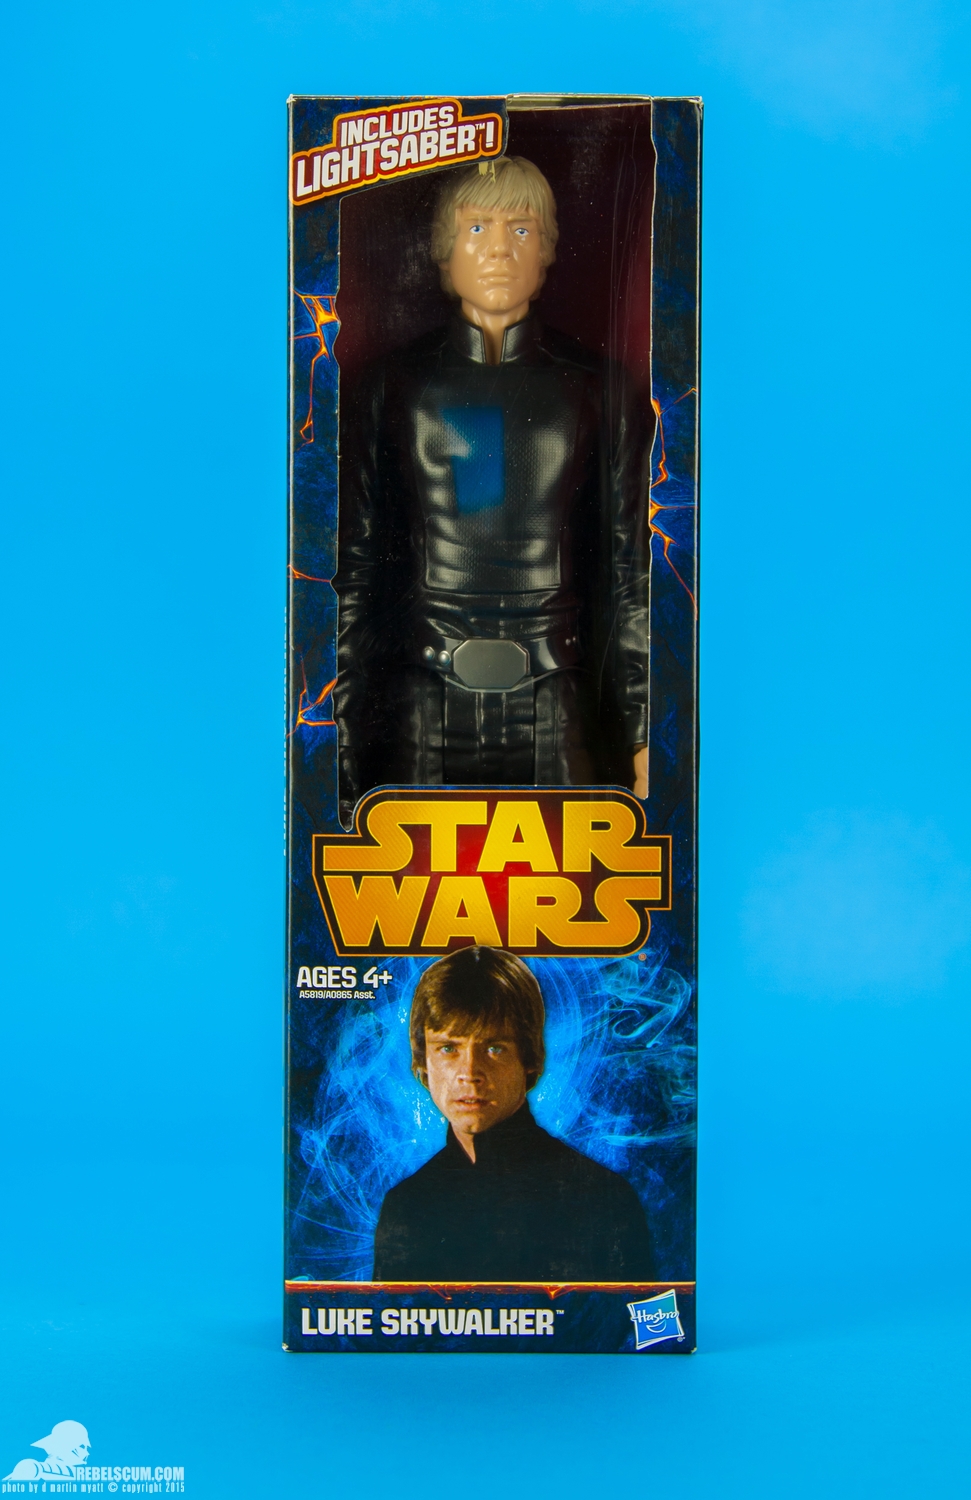 Luke-Skywalker-2014-Star-Wars-12-Inch-Figure-007.jpg